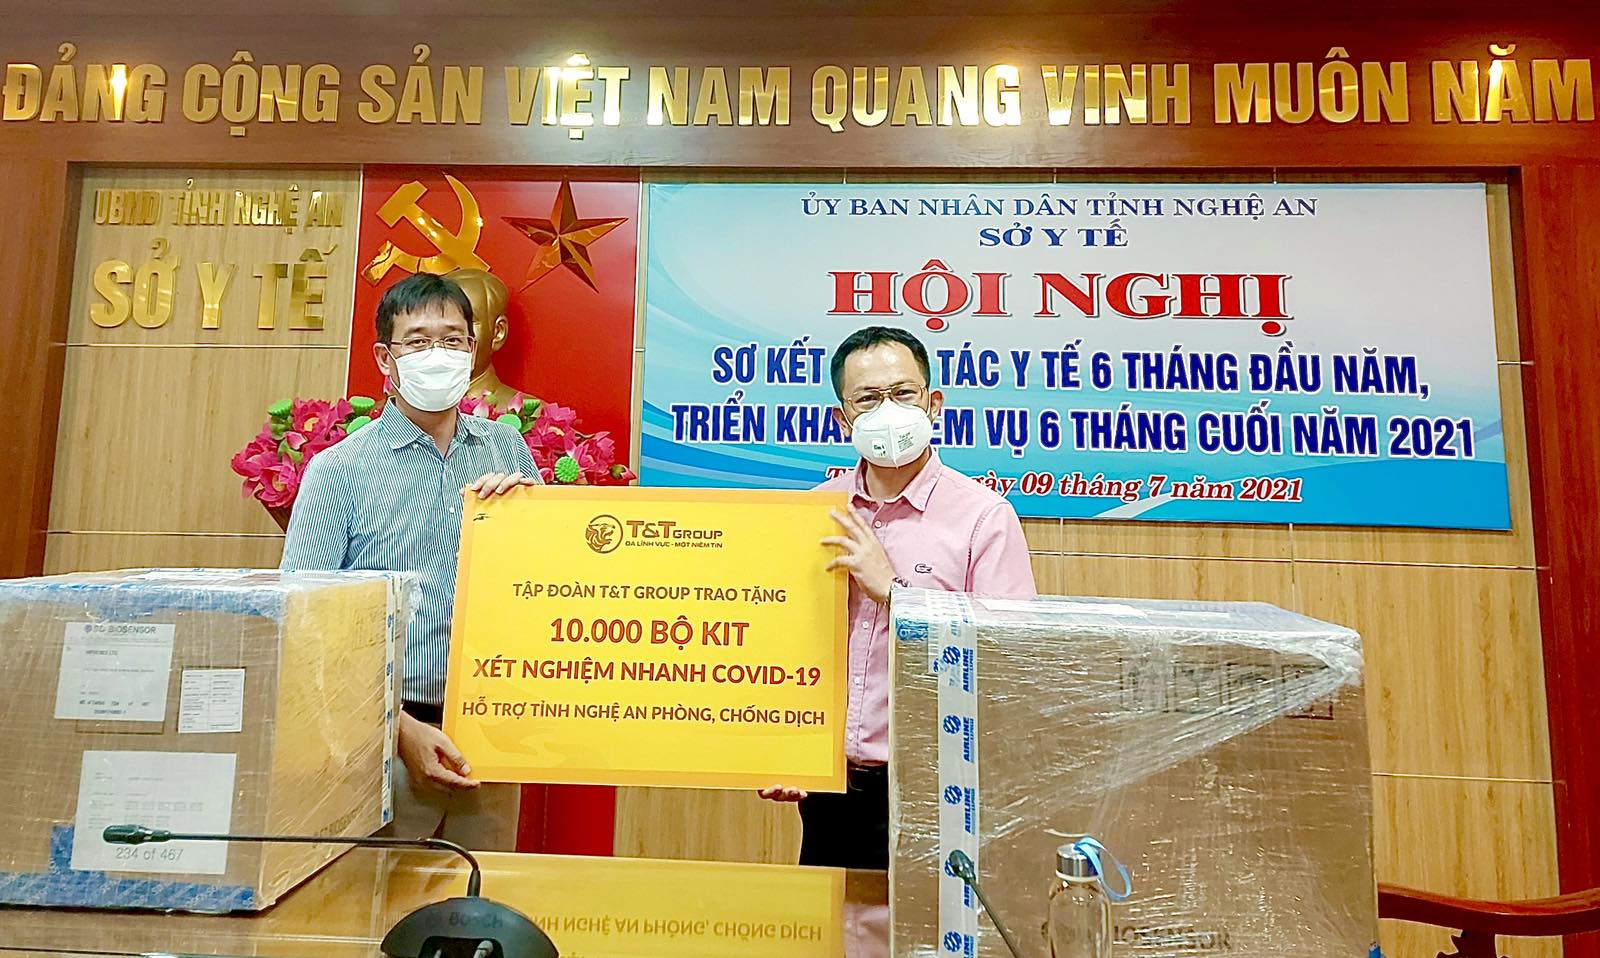 Đại diện Tập đoàn T&T Group trao tặng 10.000 bộ kit xét nghiệm nhanh COVID-19 hỗ trợ tỉnh Nghệ An phòng, chống dịch